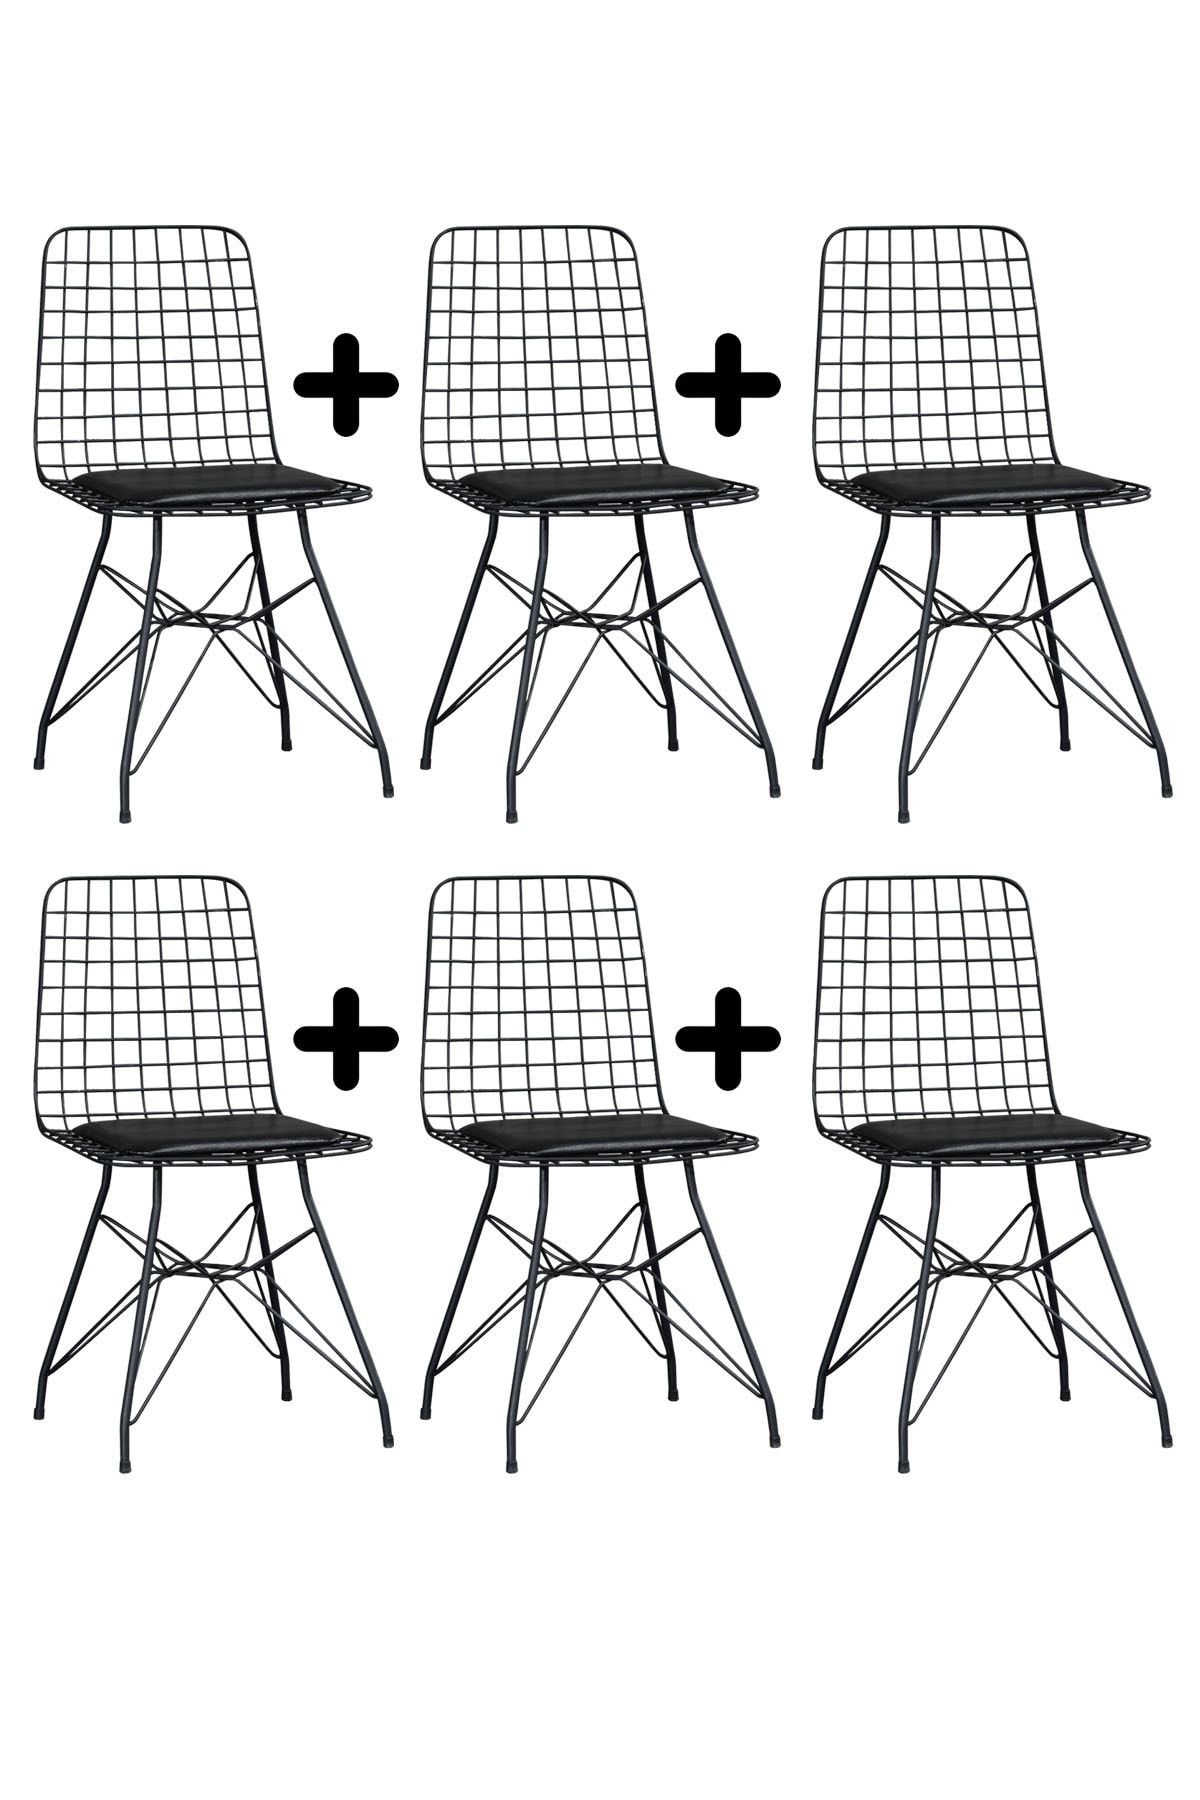 BY ORHAN GÜZEL 6'lı Siyah Eko Tel Sandalye-mutfak Sandalyesi-metal Sandalye-çalışma Sandalyesi-masa&sandalye